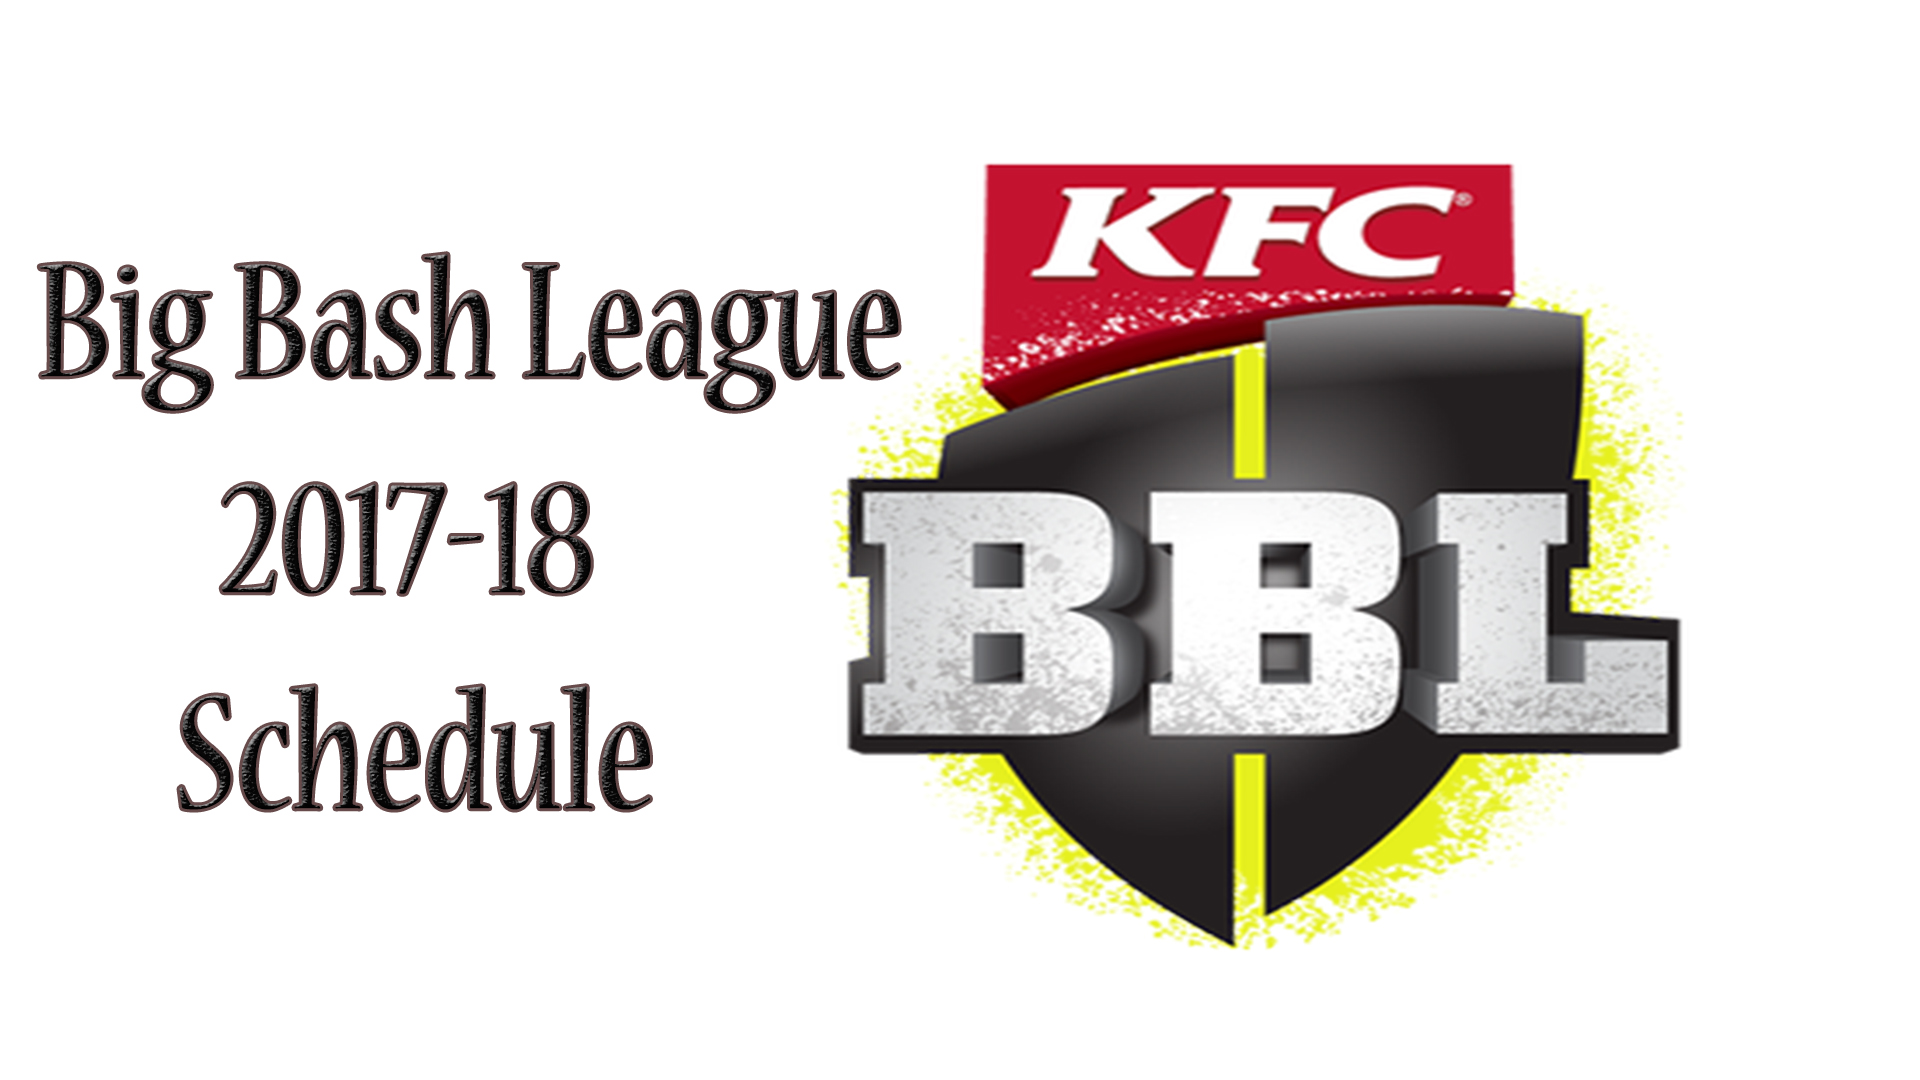 Big bash league 2017 schedule image